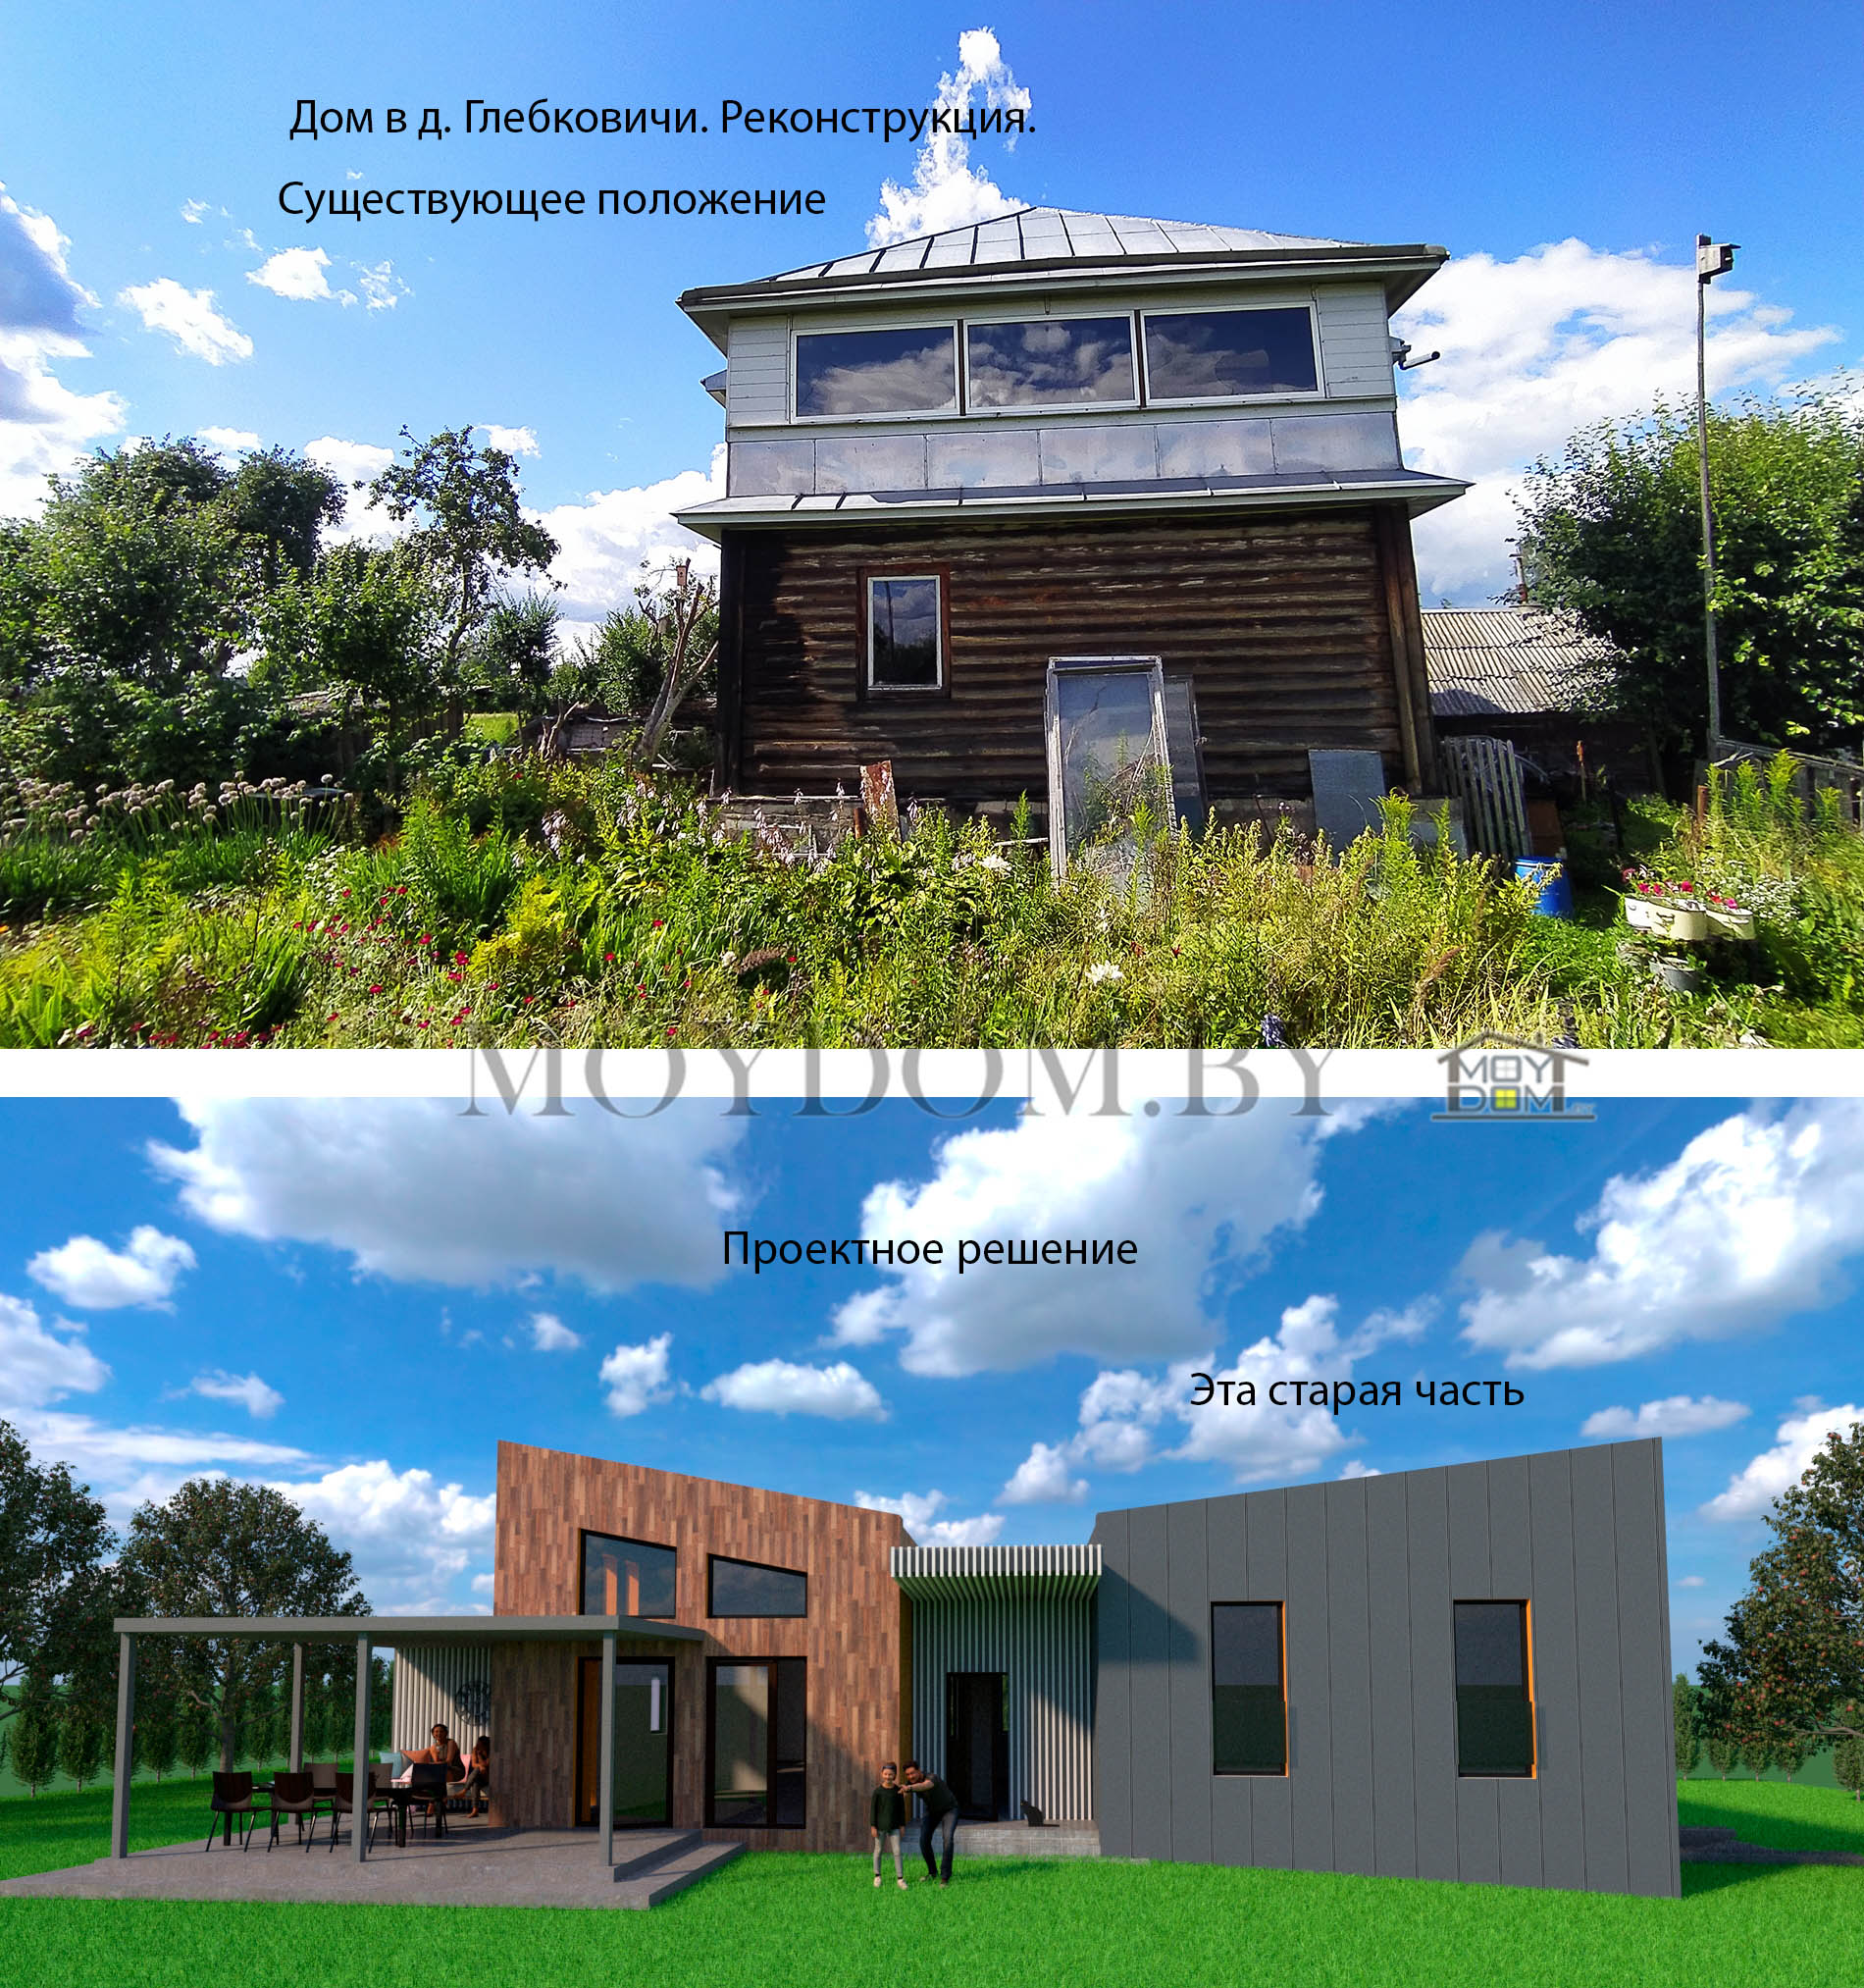 976 реконструкция деревянного дома и модернизация